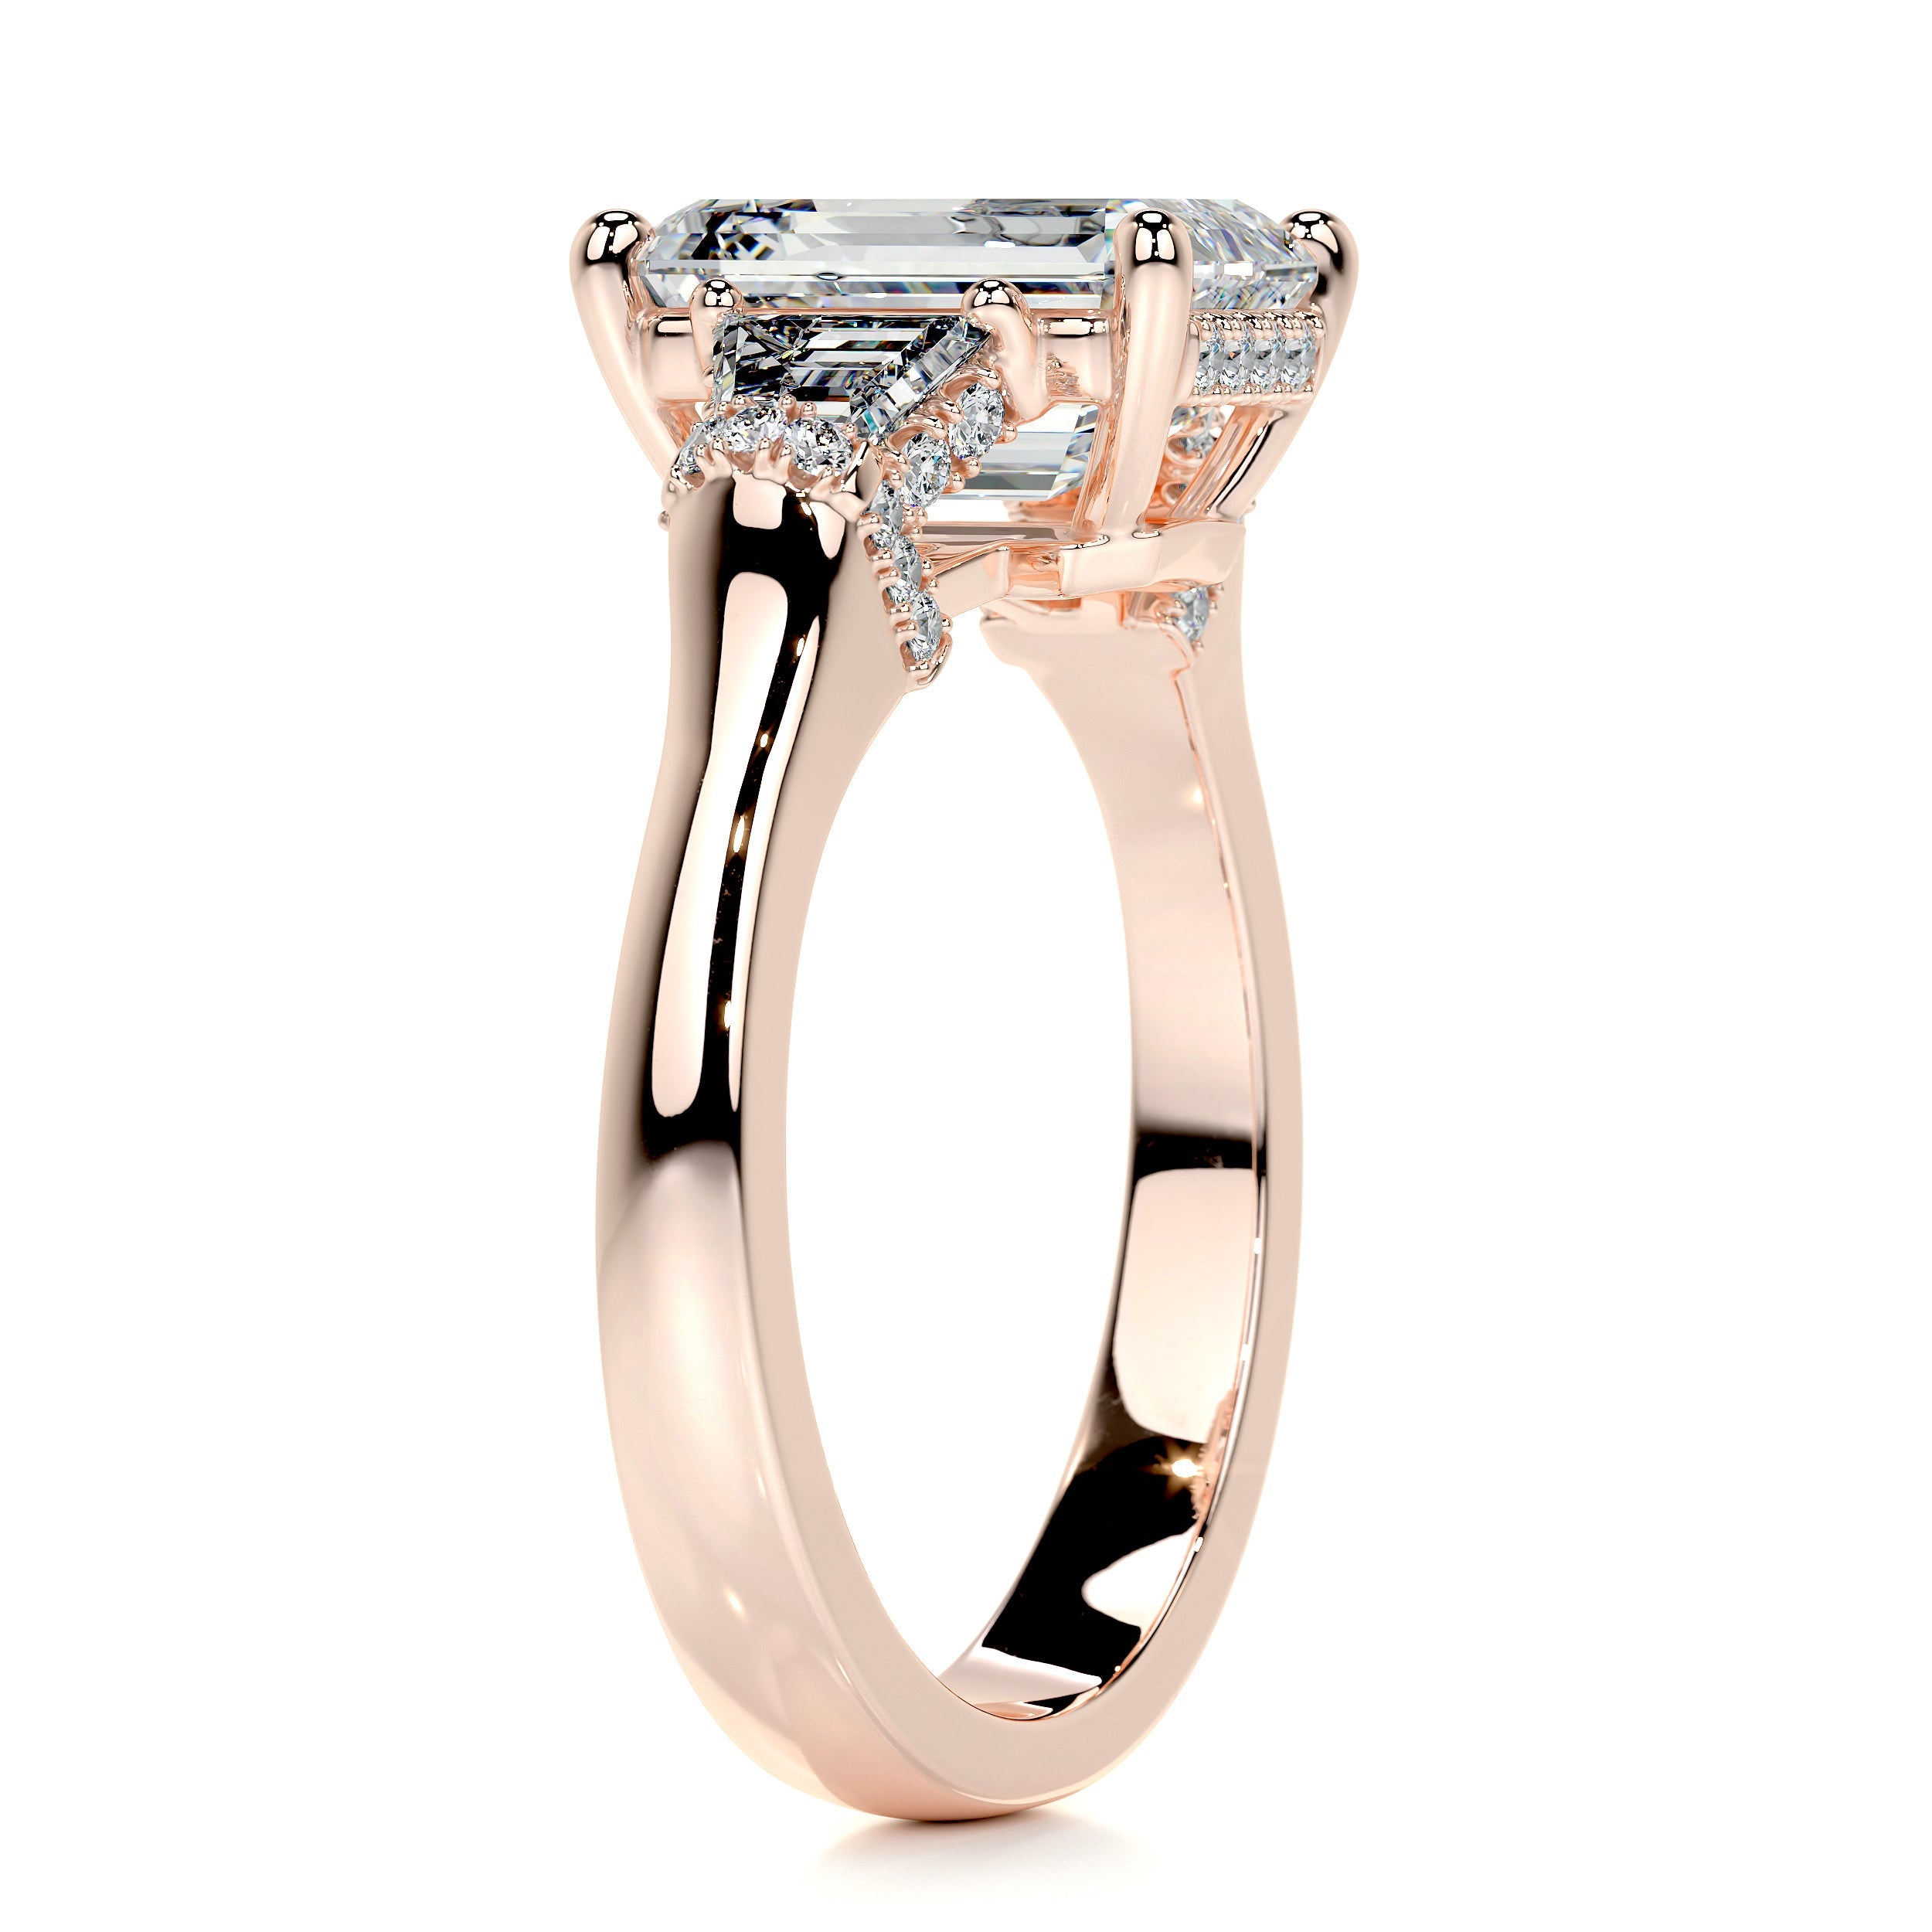 Viola Diamond Engagement Ring   (3.6 Carat) -14K Rose Gold